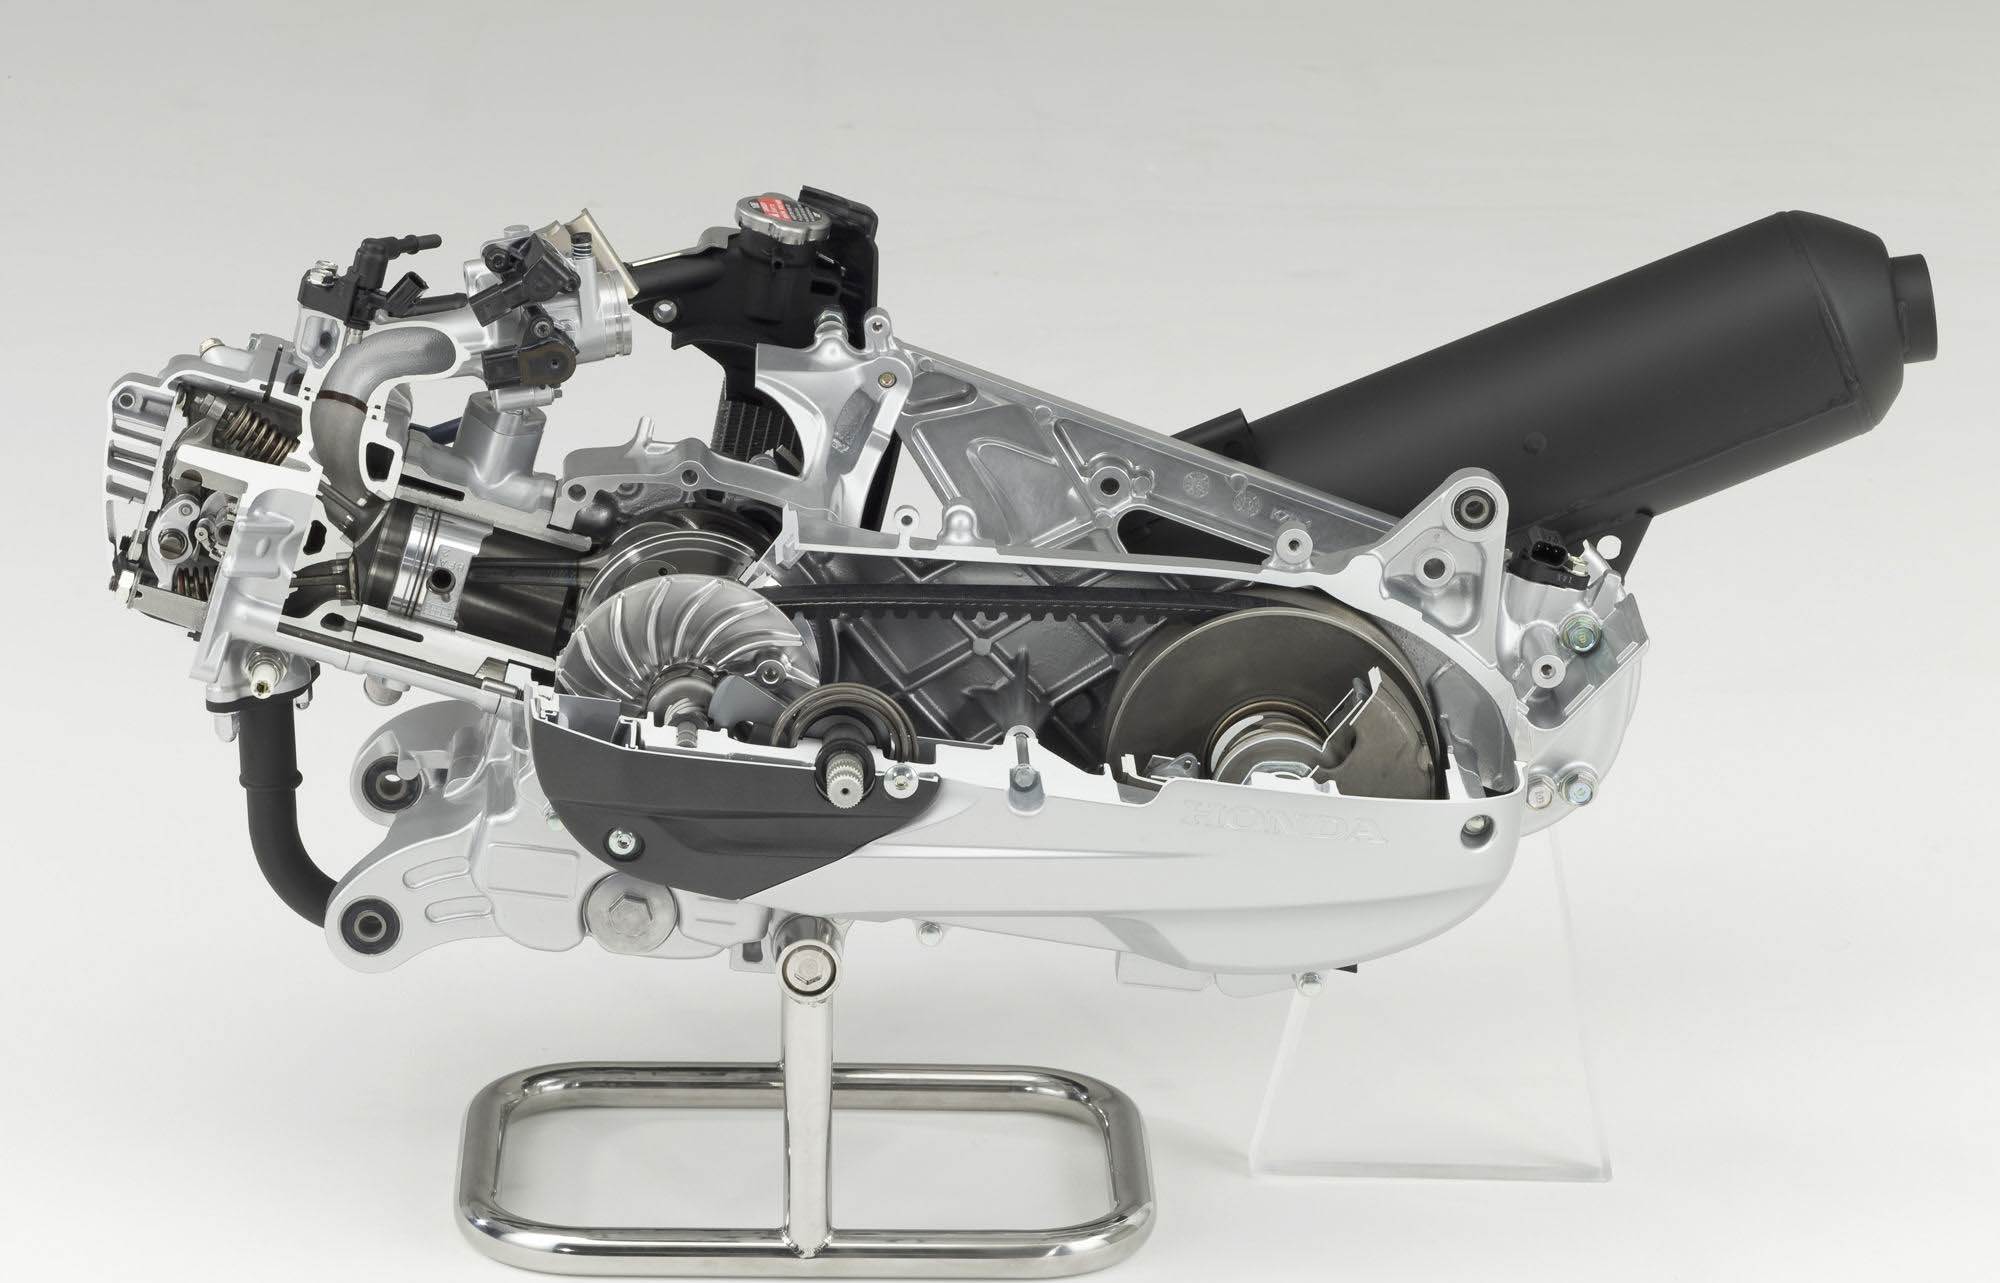 Двс скутера. Двигатель скутера Хонда 150. Двигатель скутера 139qmb в разрезе. Вариаторный 125 СС мотор. 125 QMB двигатель.